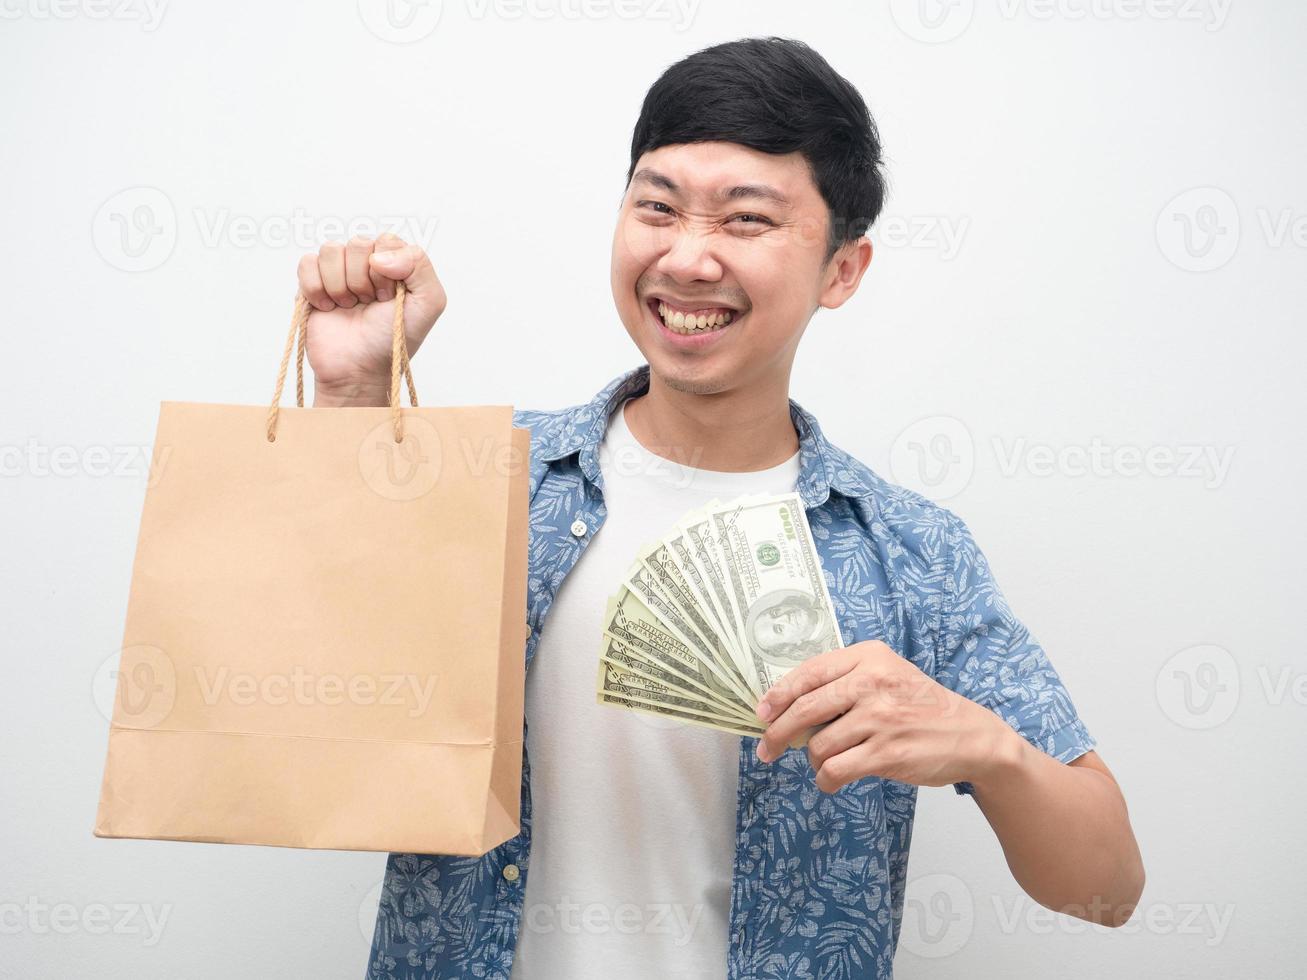 homem asiático felicidade com compras, homem alegre segurando muito dinheiro e sacola de compras foto